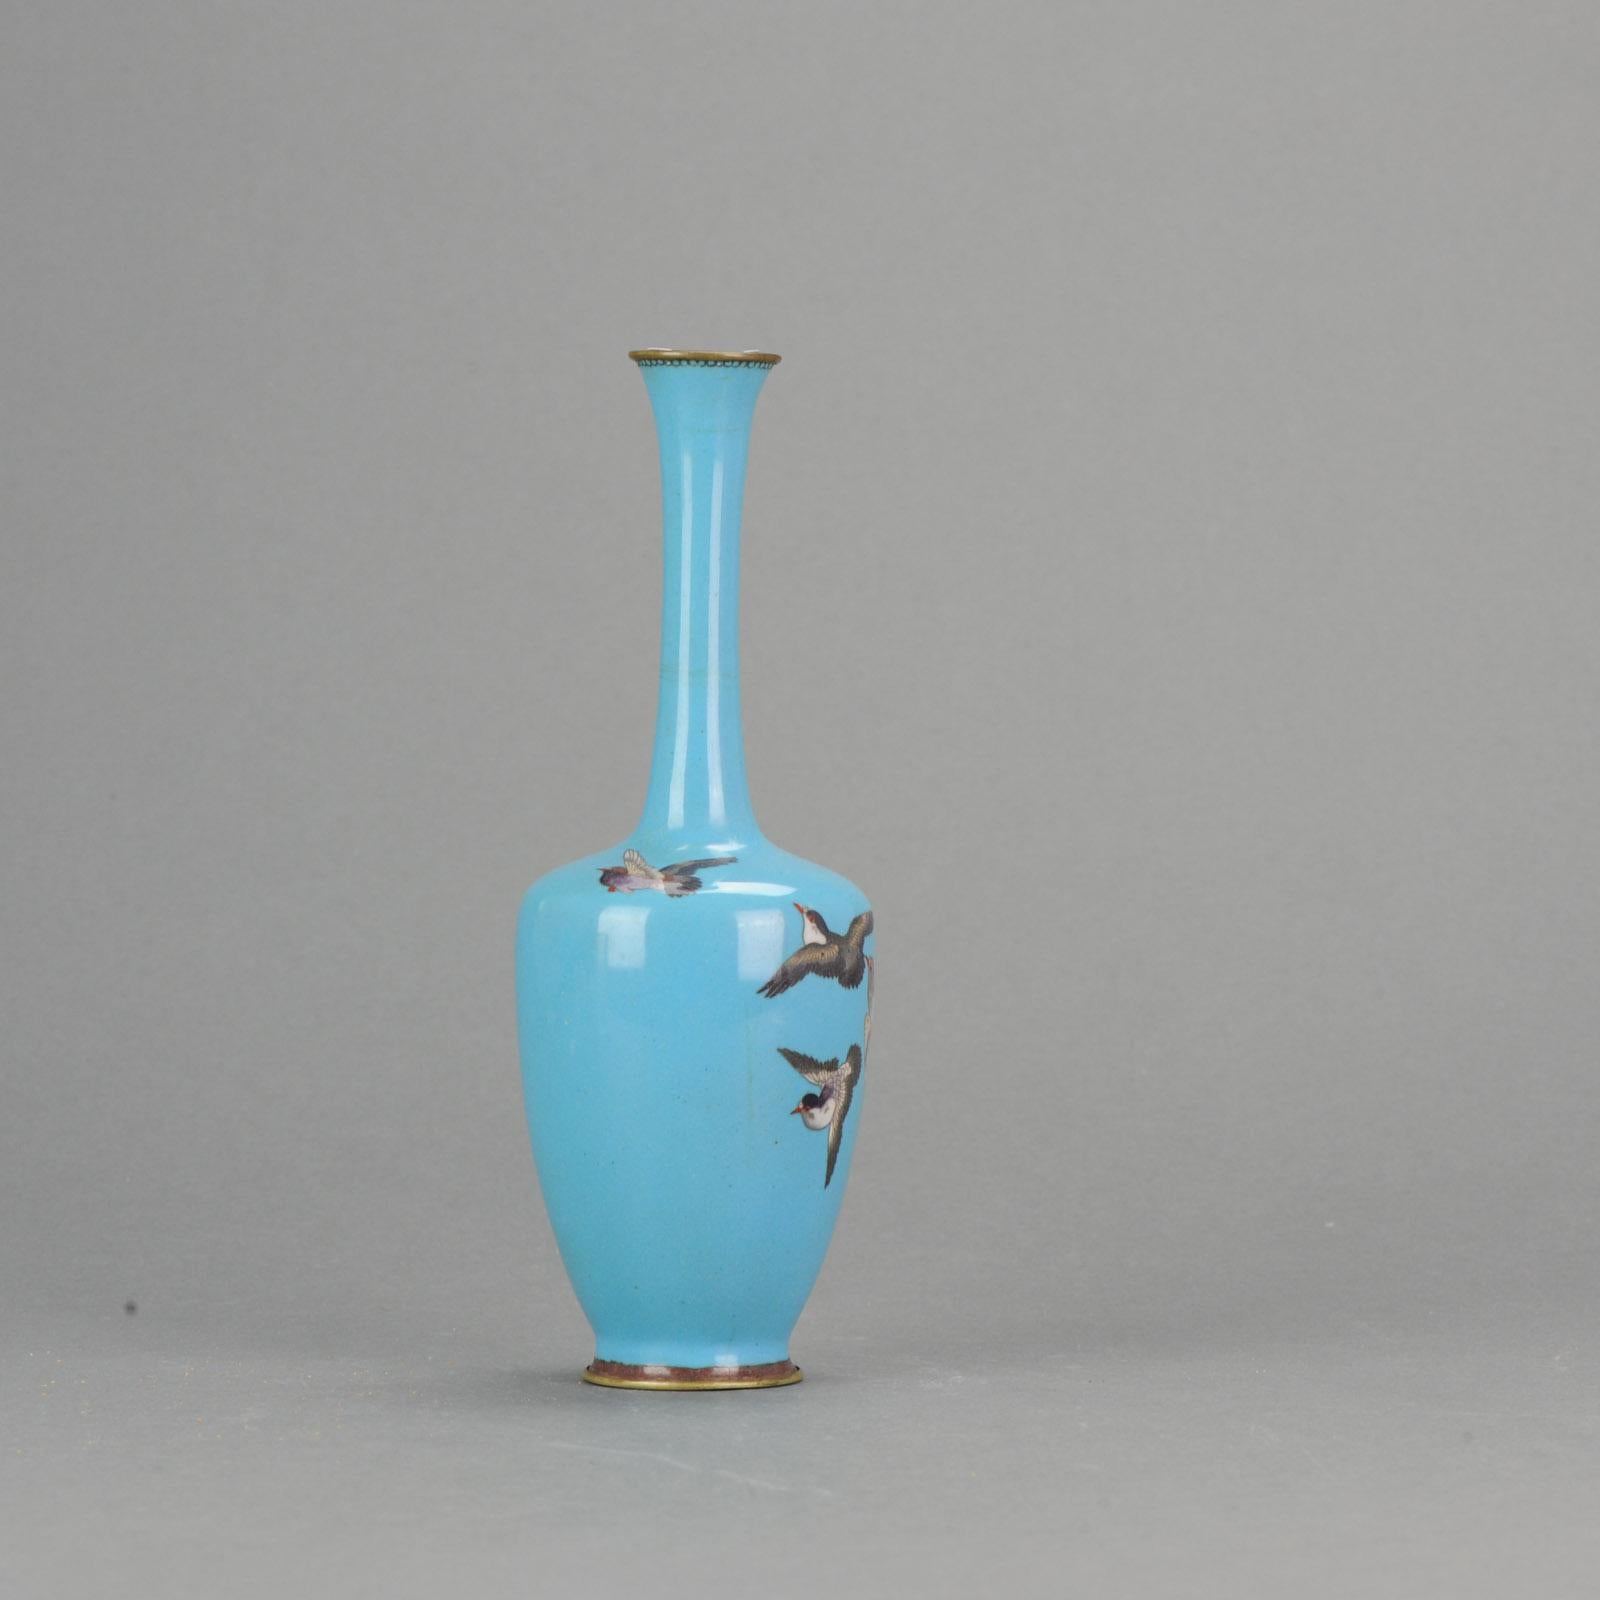 Cloissoné Antique Bronze / Copper Cloisonne Vase Japan 19th Century Bird scene